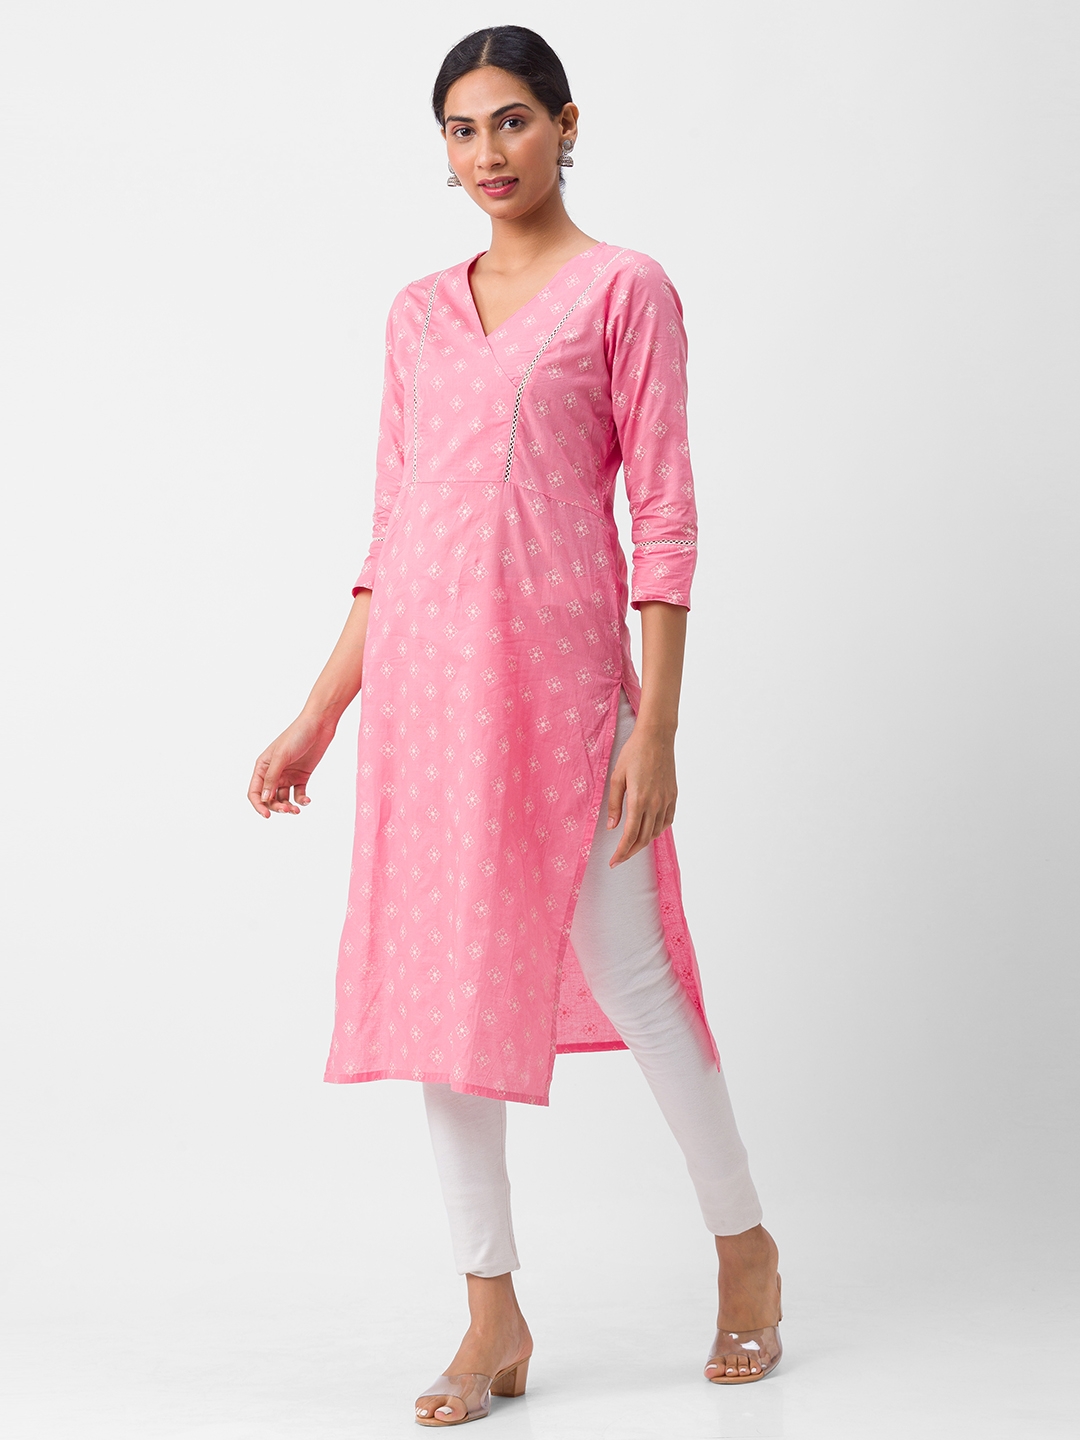 globus | Women's Pink Cotton Printed Kurtas 3